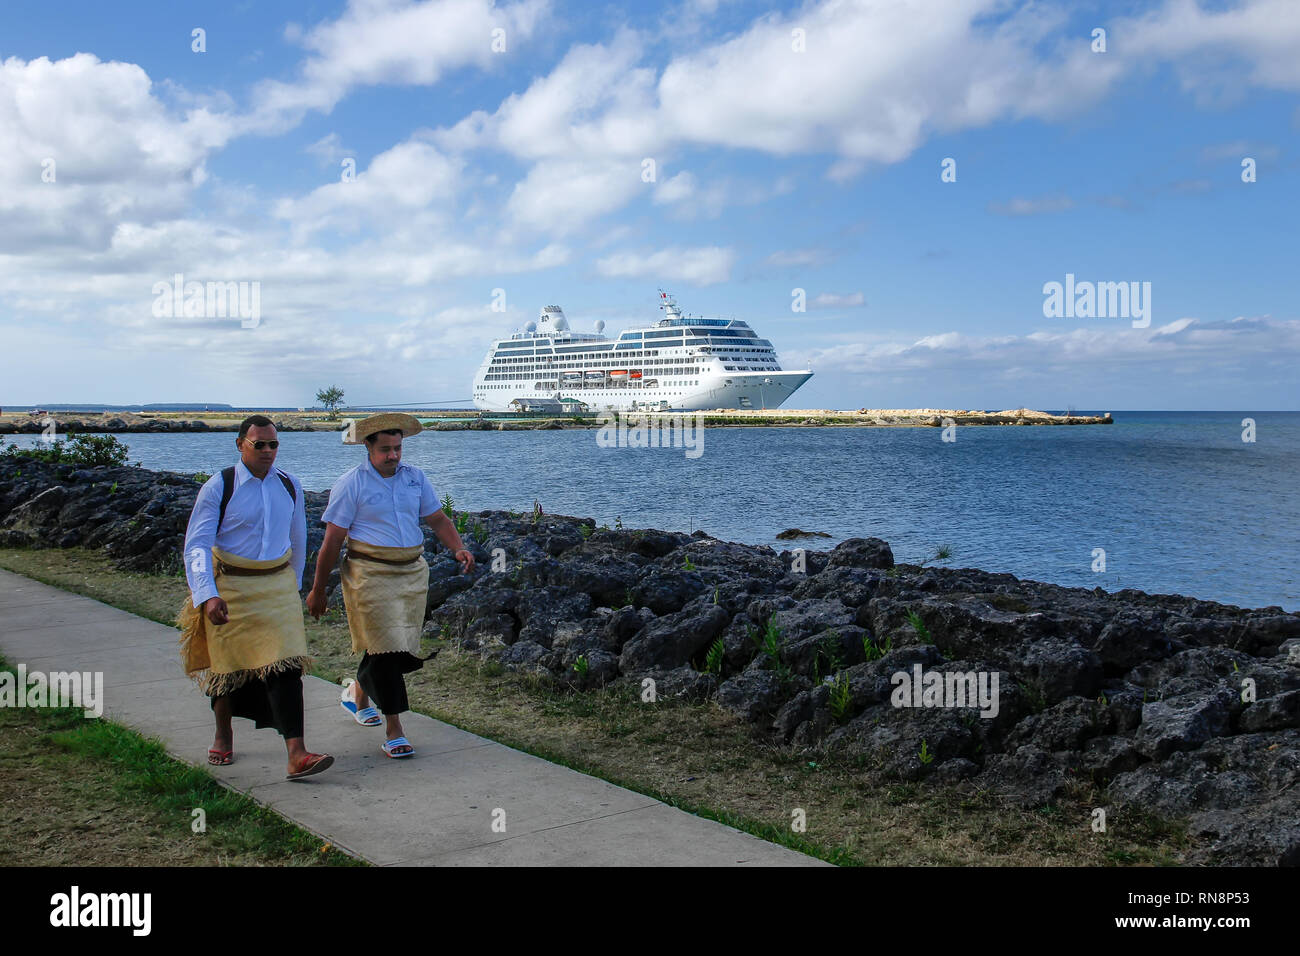 Les hommes de marcher au bord de l'eau dans Nuku'alofa, Tonga sur l'île de Tongatapu. Nukuʻalofa est la capitale du Royaume des Tonga Banque D'Images